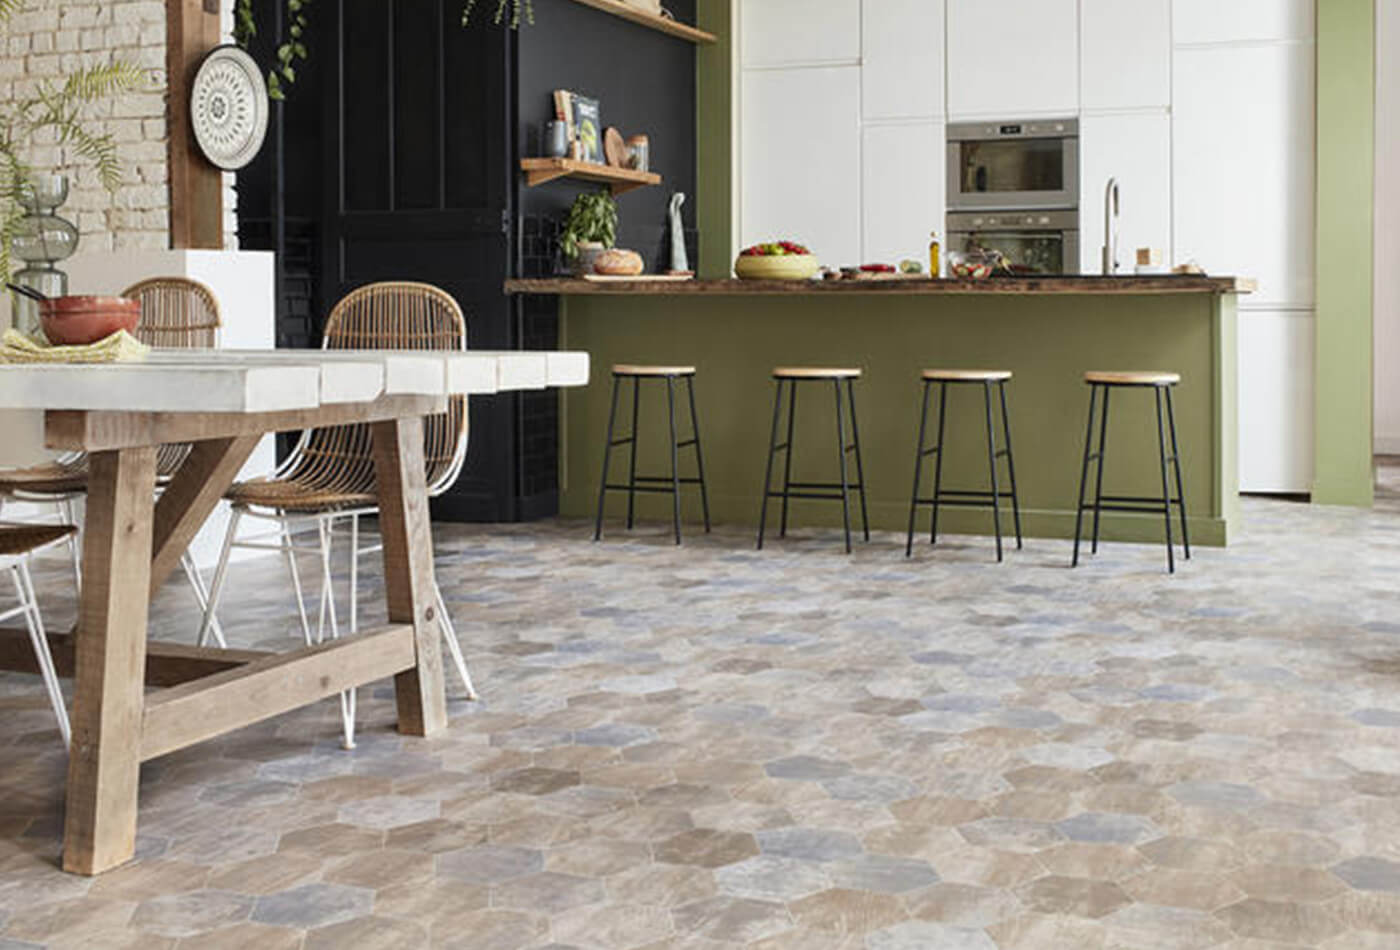 Update Your Kitchen Floor With Tiles